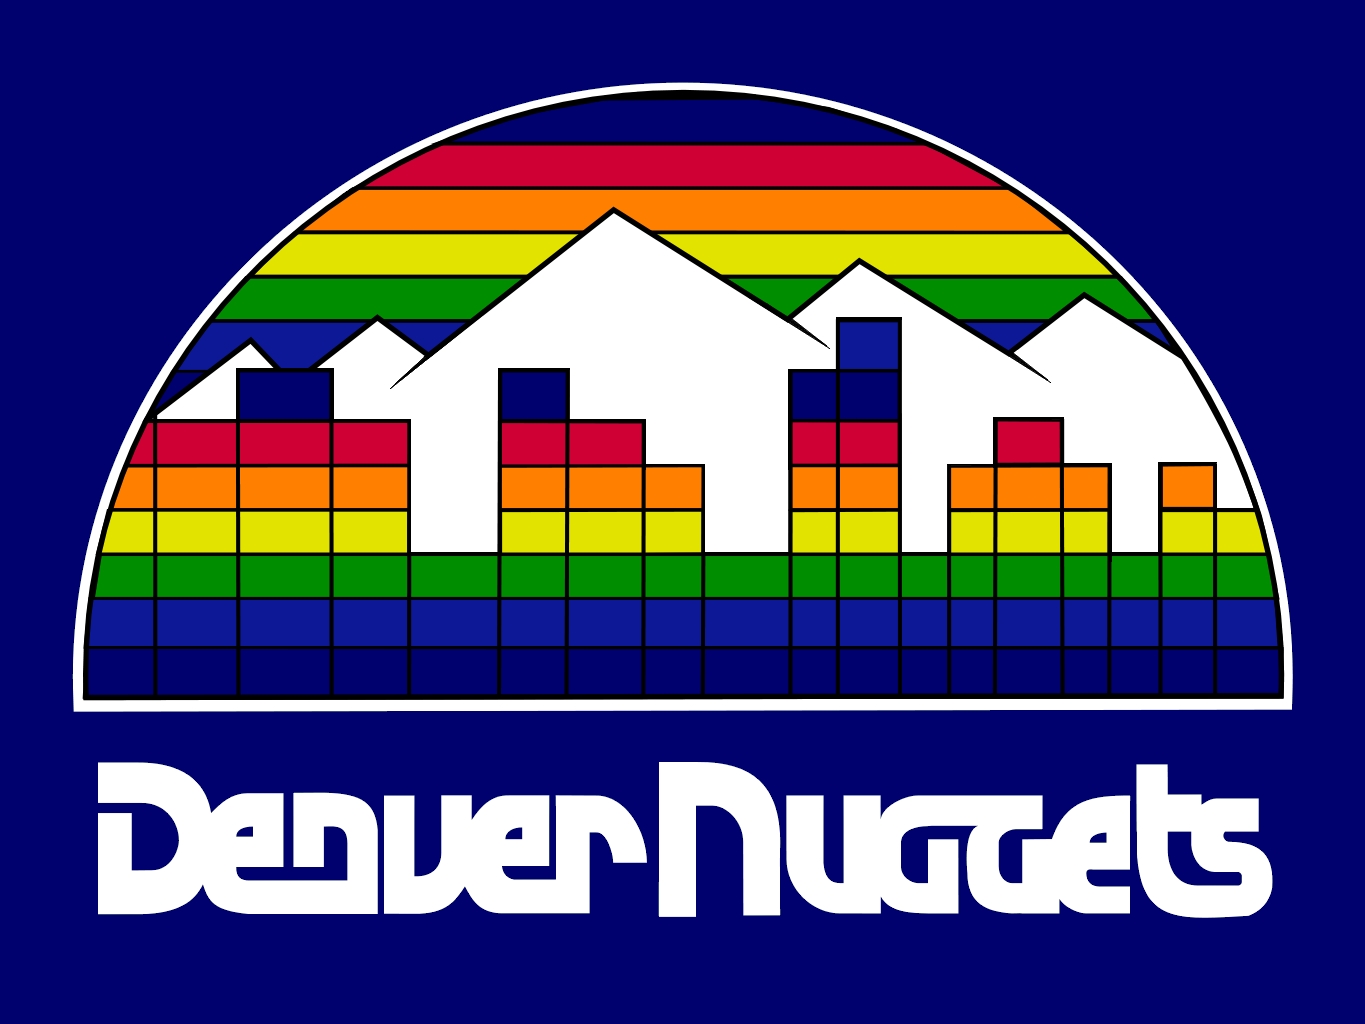 History of All Logos: All Denver Nuggets Logos